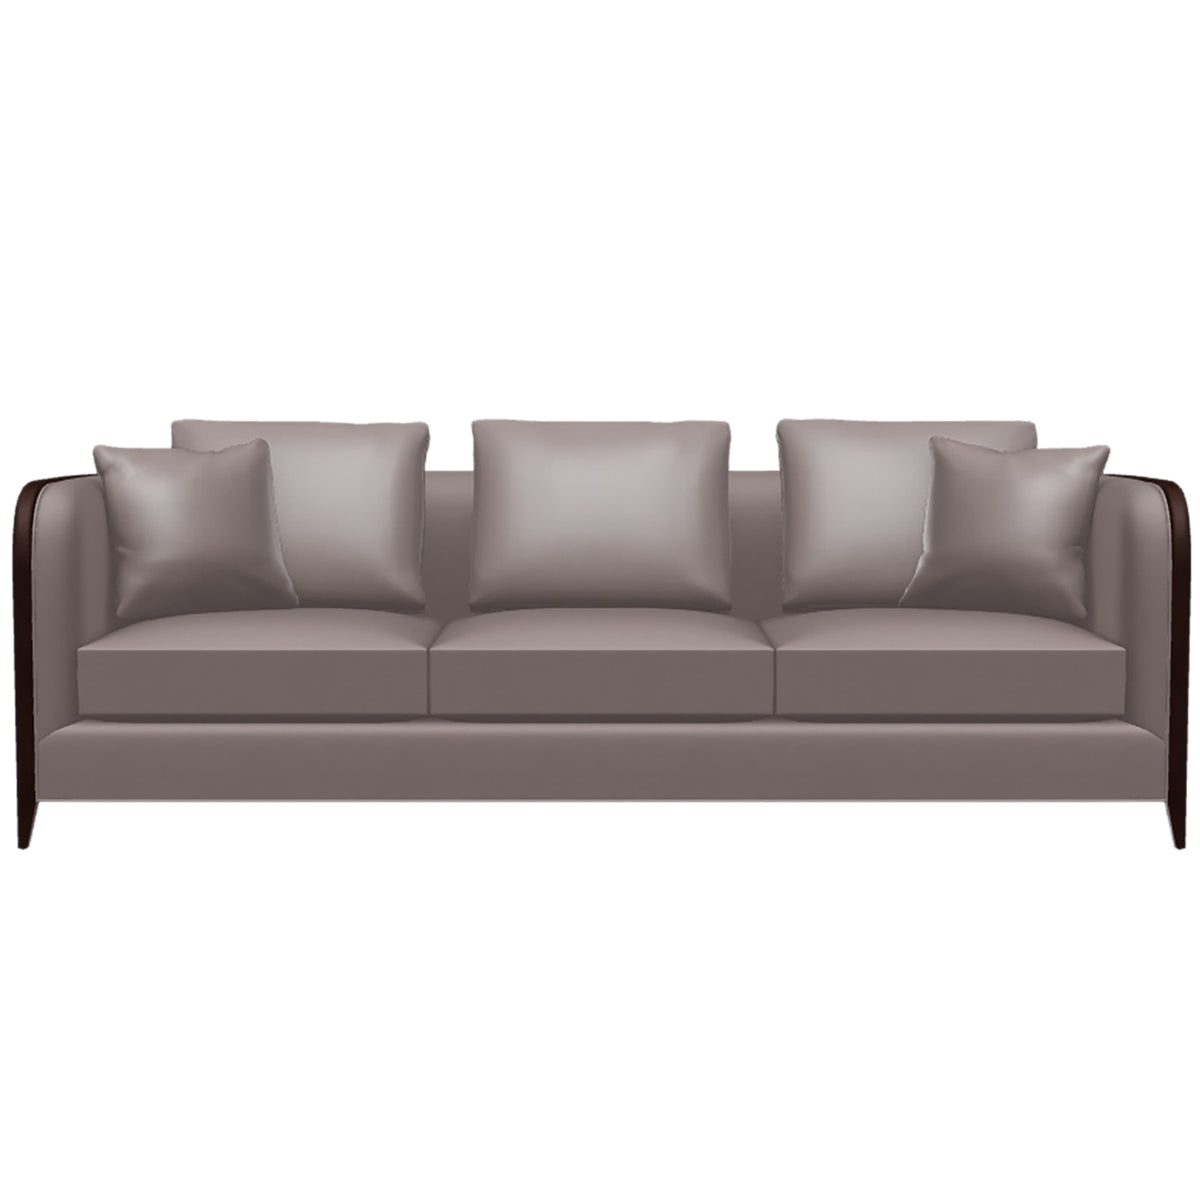 Ruhlmann Sofa, Sepia